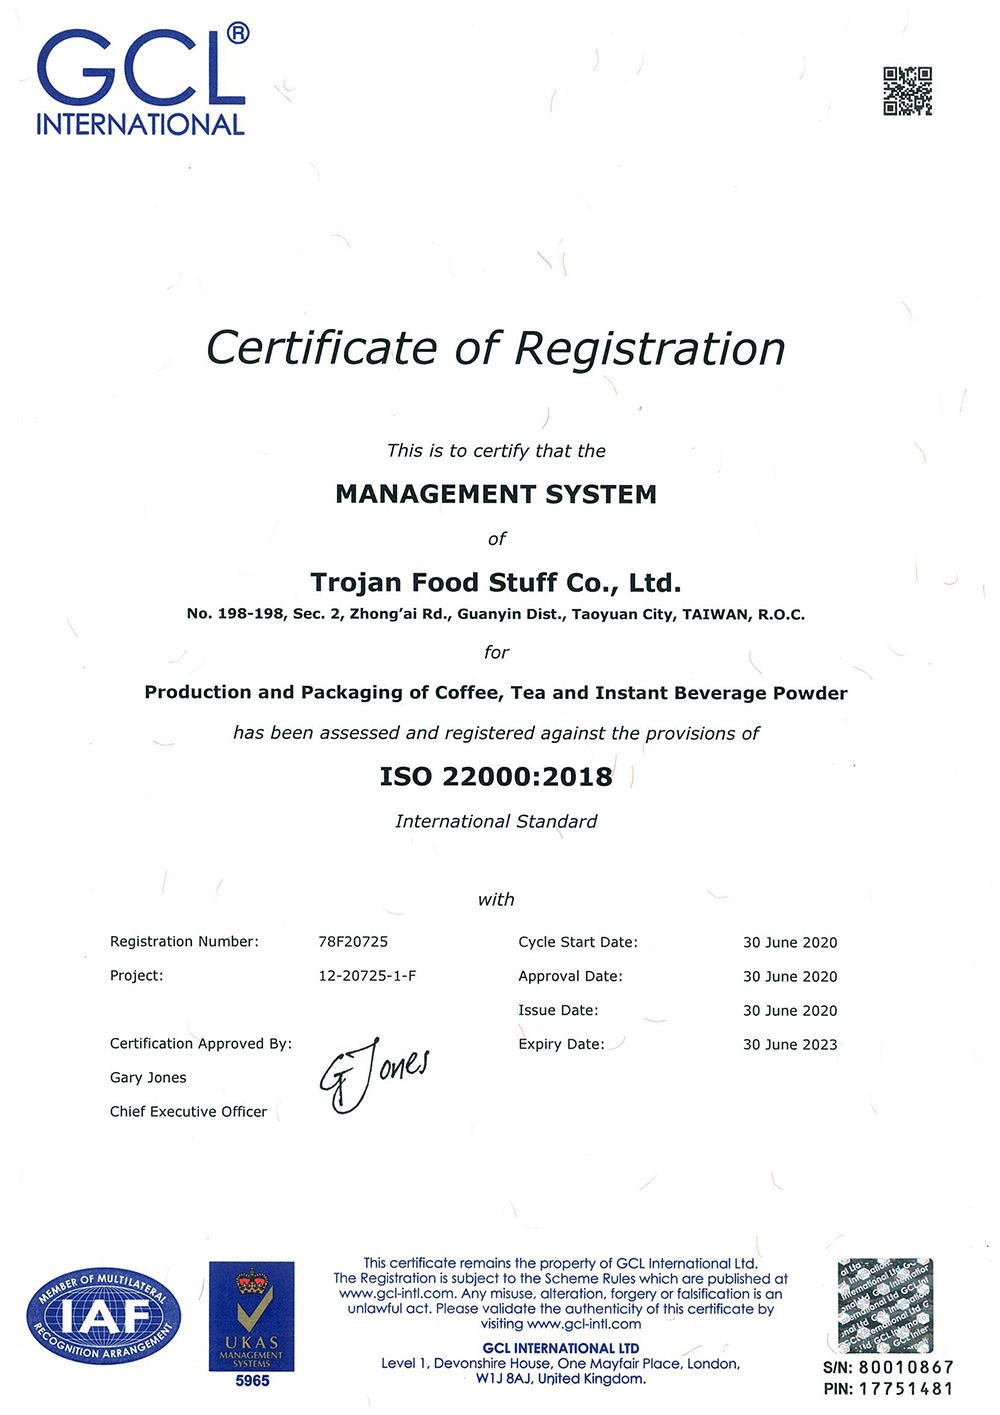 TROJANerhielt 2019 die ISO-22000-Zertifizierung